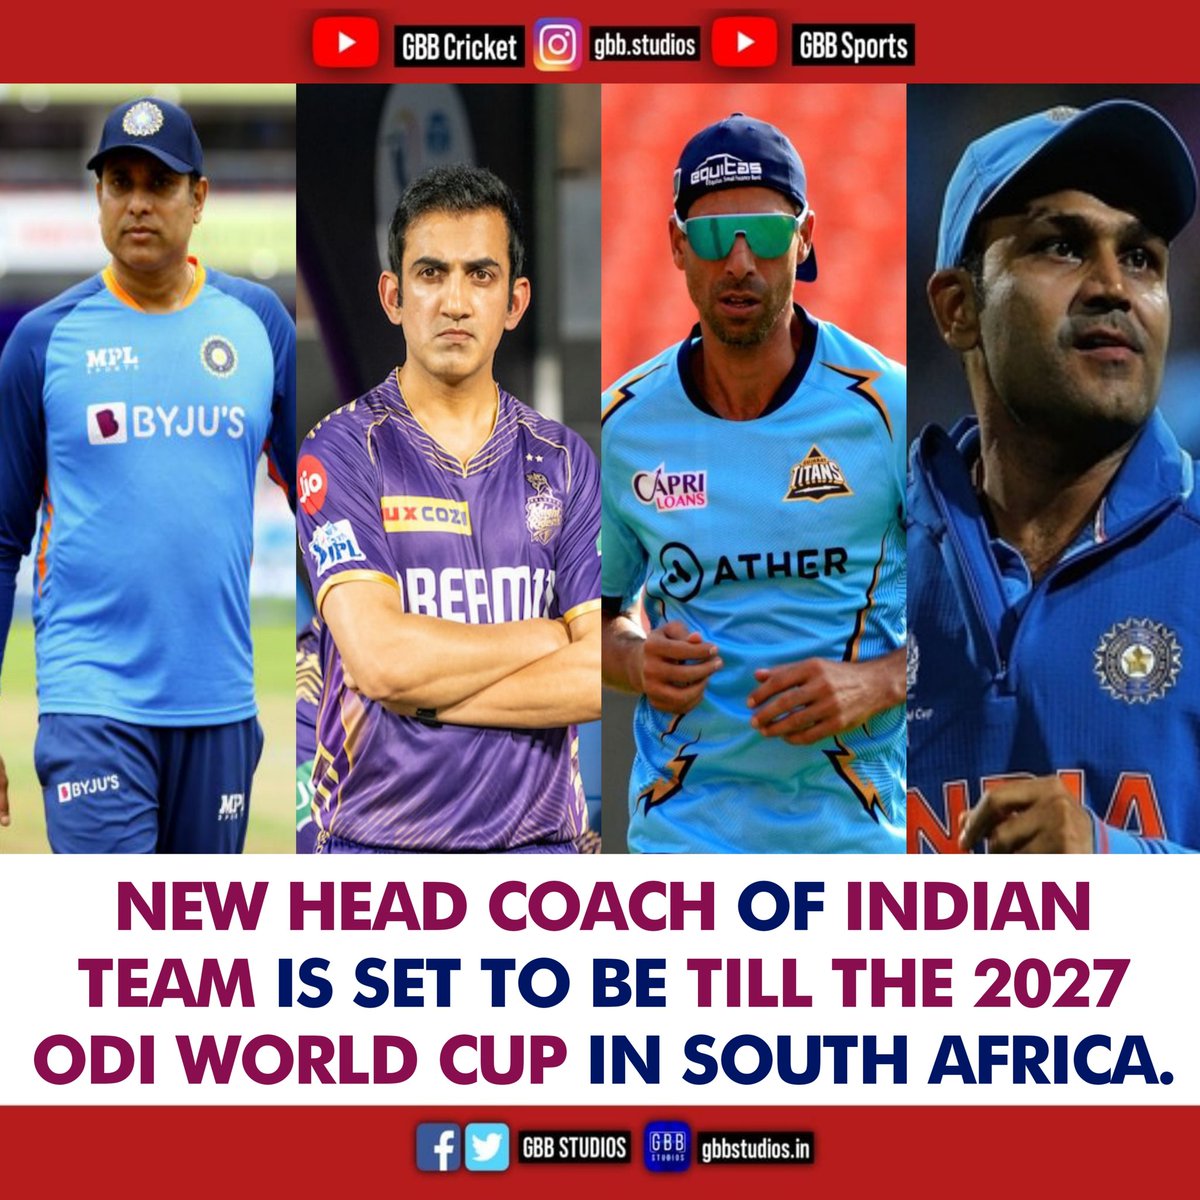 Team India Head Coach Updates!

#TeamIndia #IndianCricketTeam #RahulDravid #GautamGambhir #varunchakravarthy #SunilNarine #RohitSharma #HardikPandya #jaspritbumrah #tilakvarma #harshitrana #KolkataKnightRiders #RohitSharma𓃵